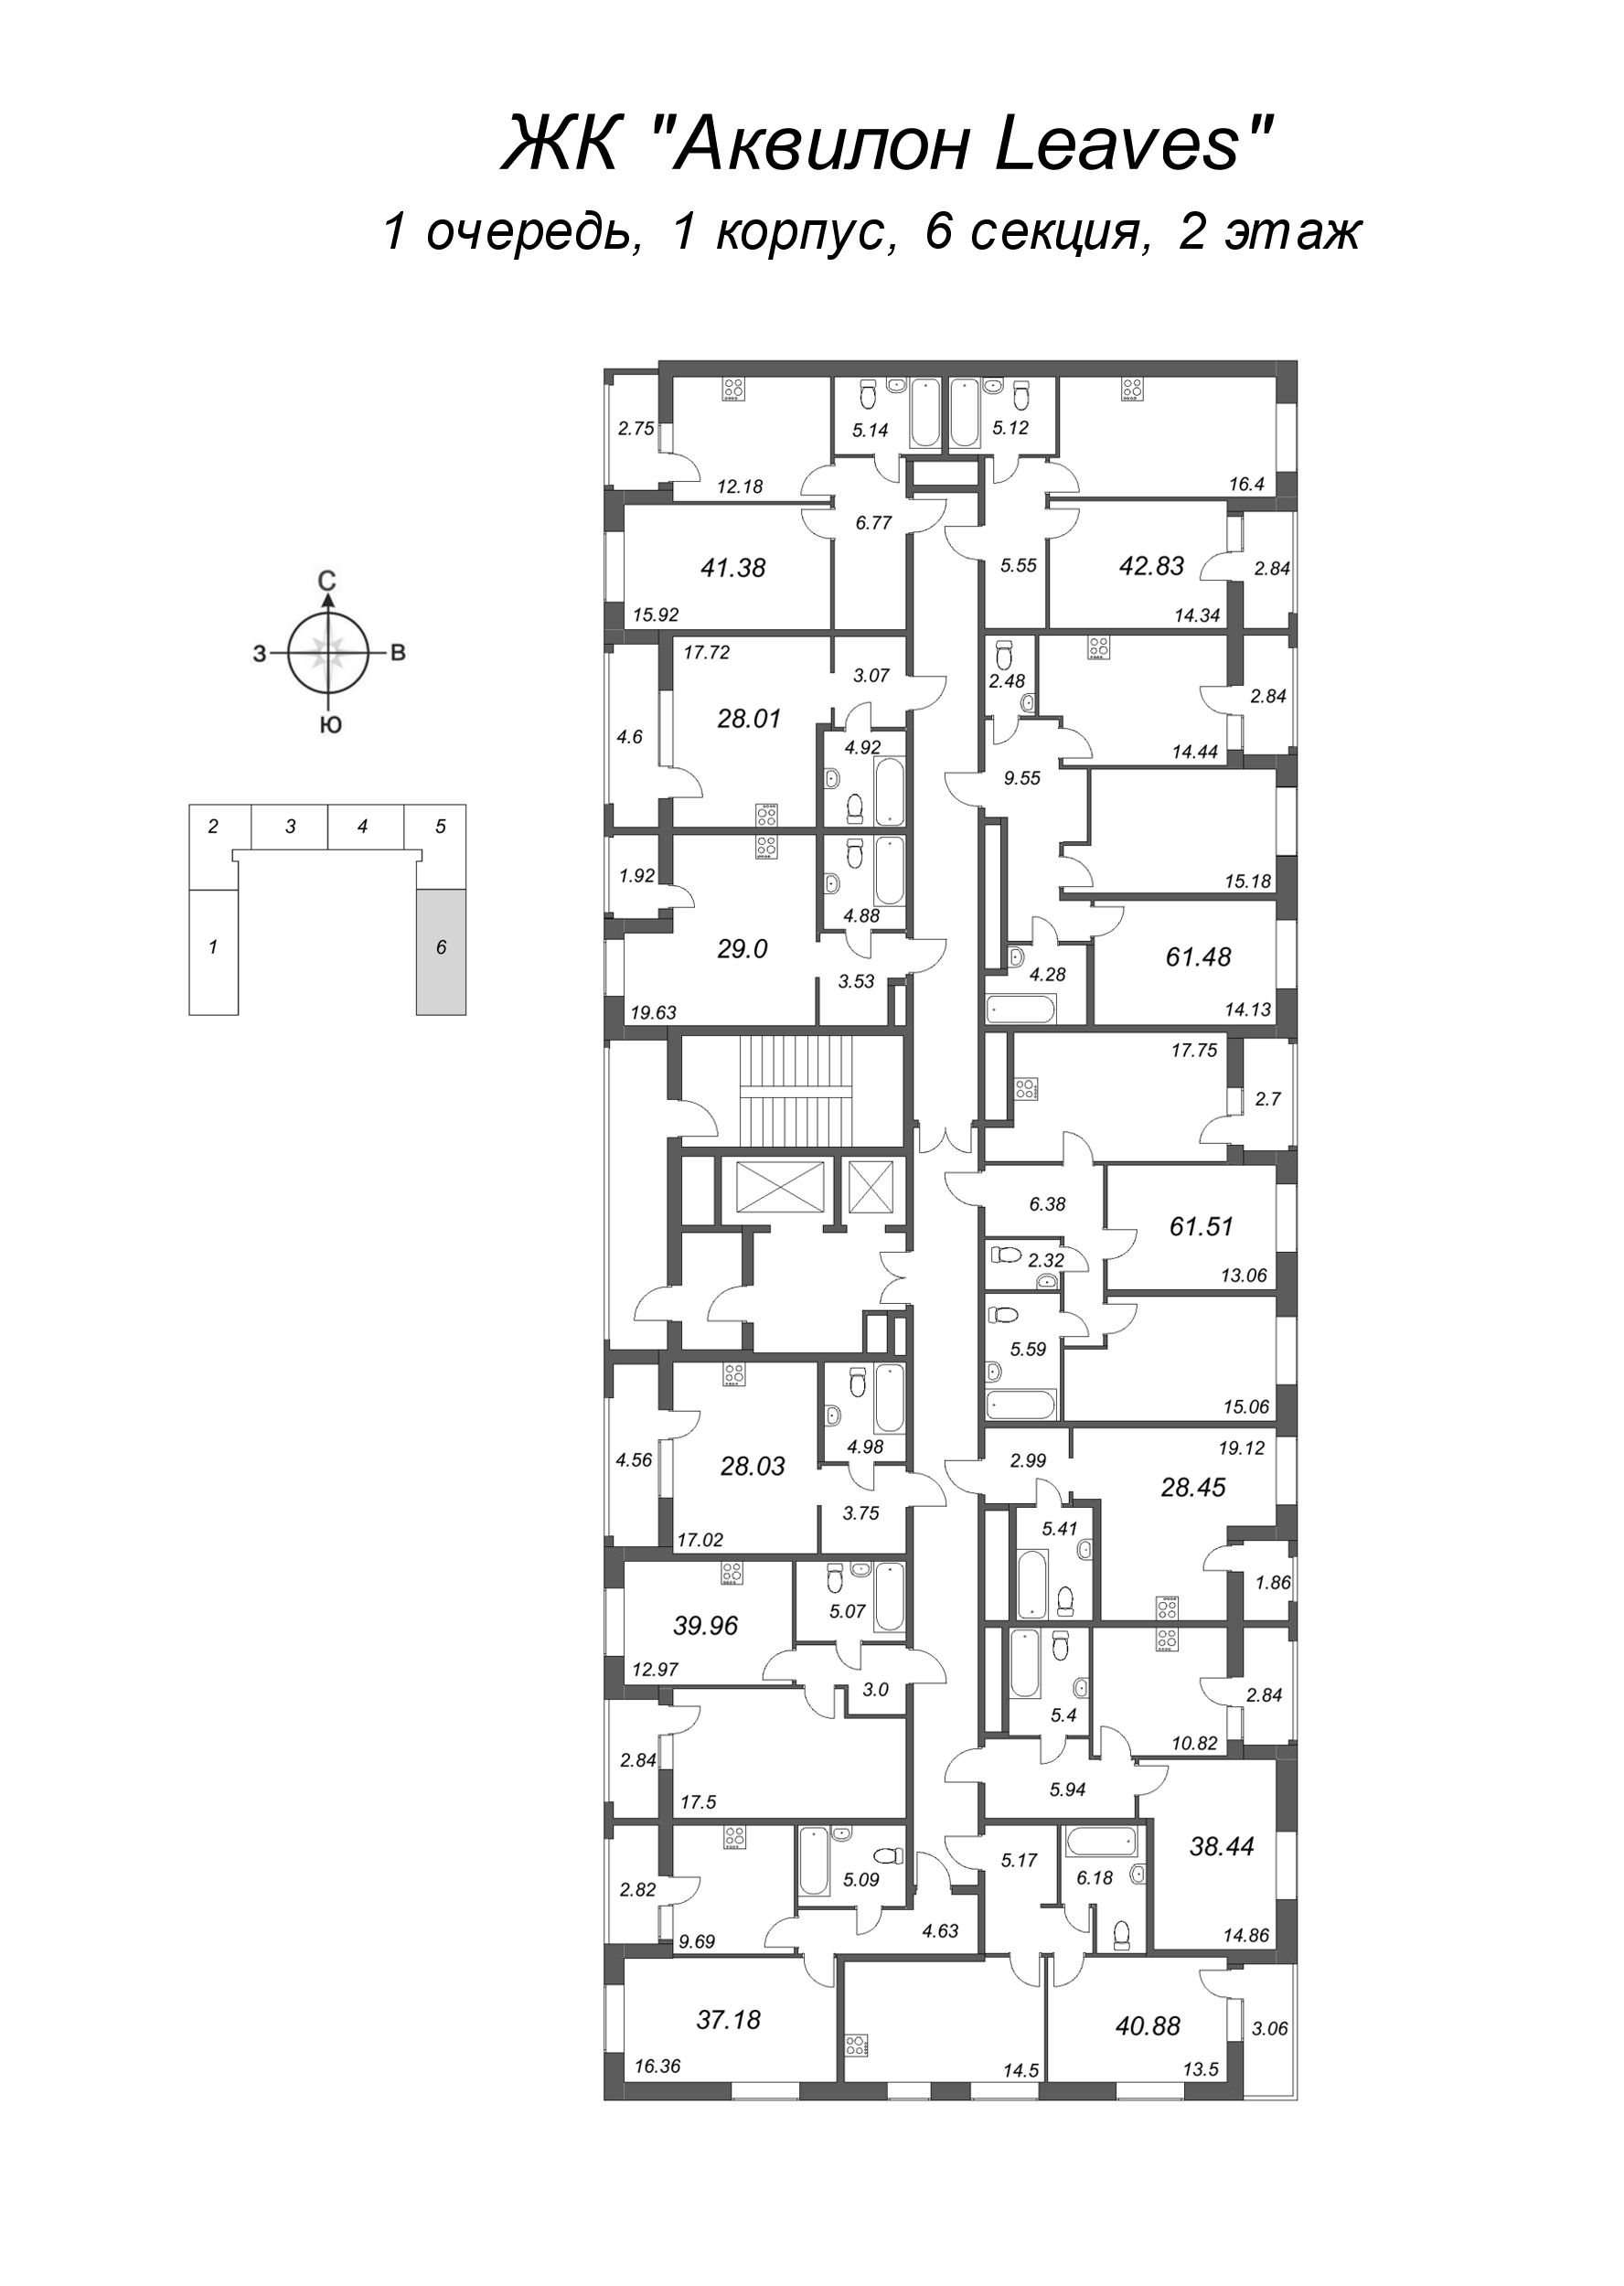 Квартира-студия, 28.45 м² в ЖК "Аквилон Leaves" - планировка этажа